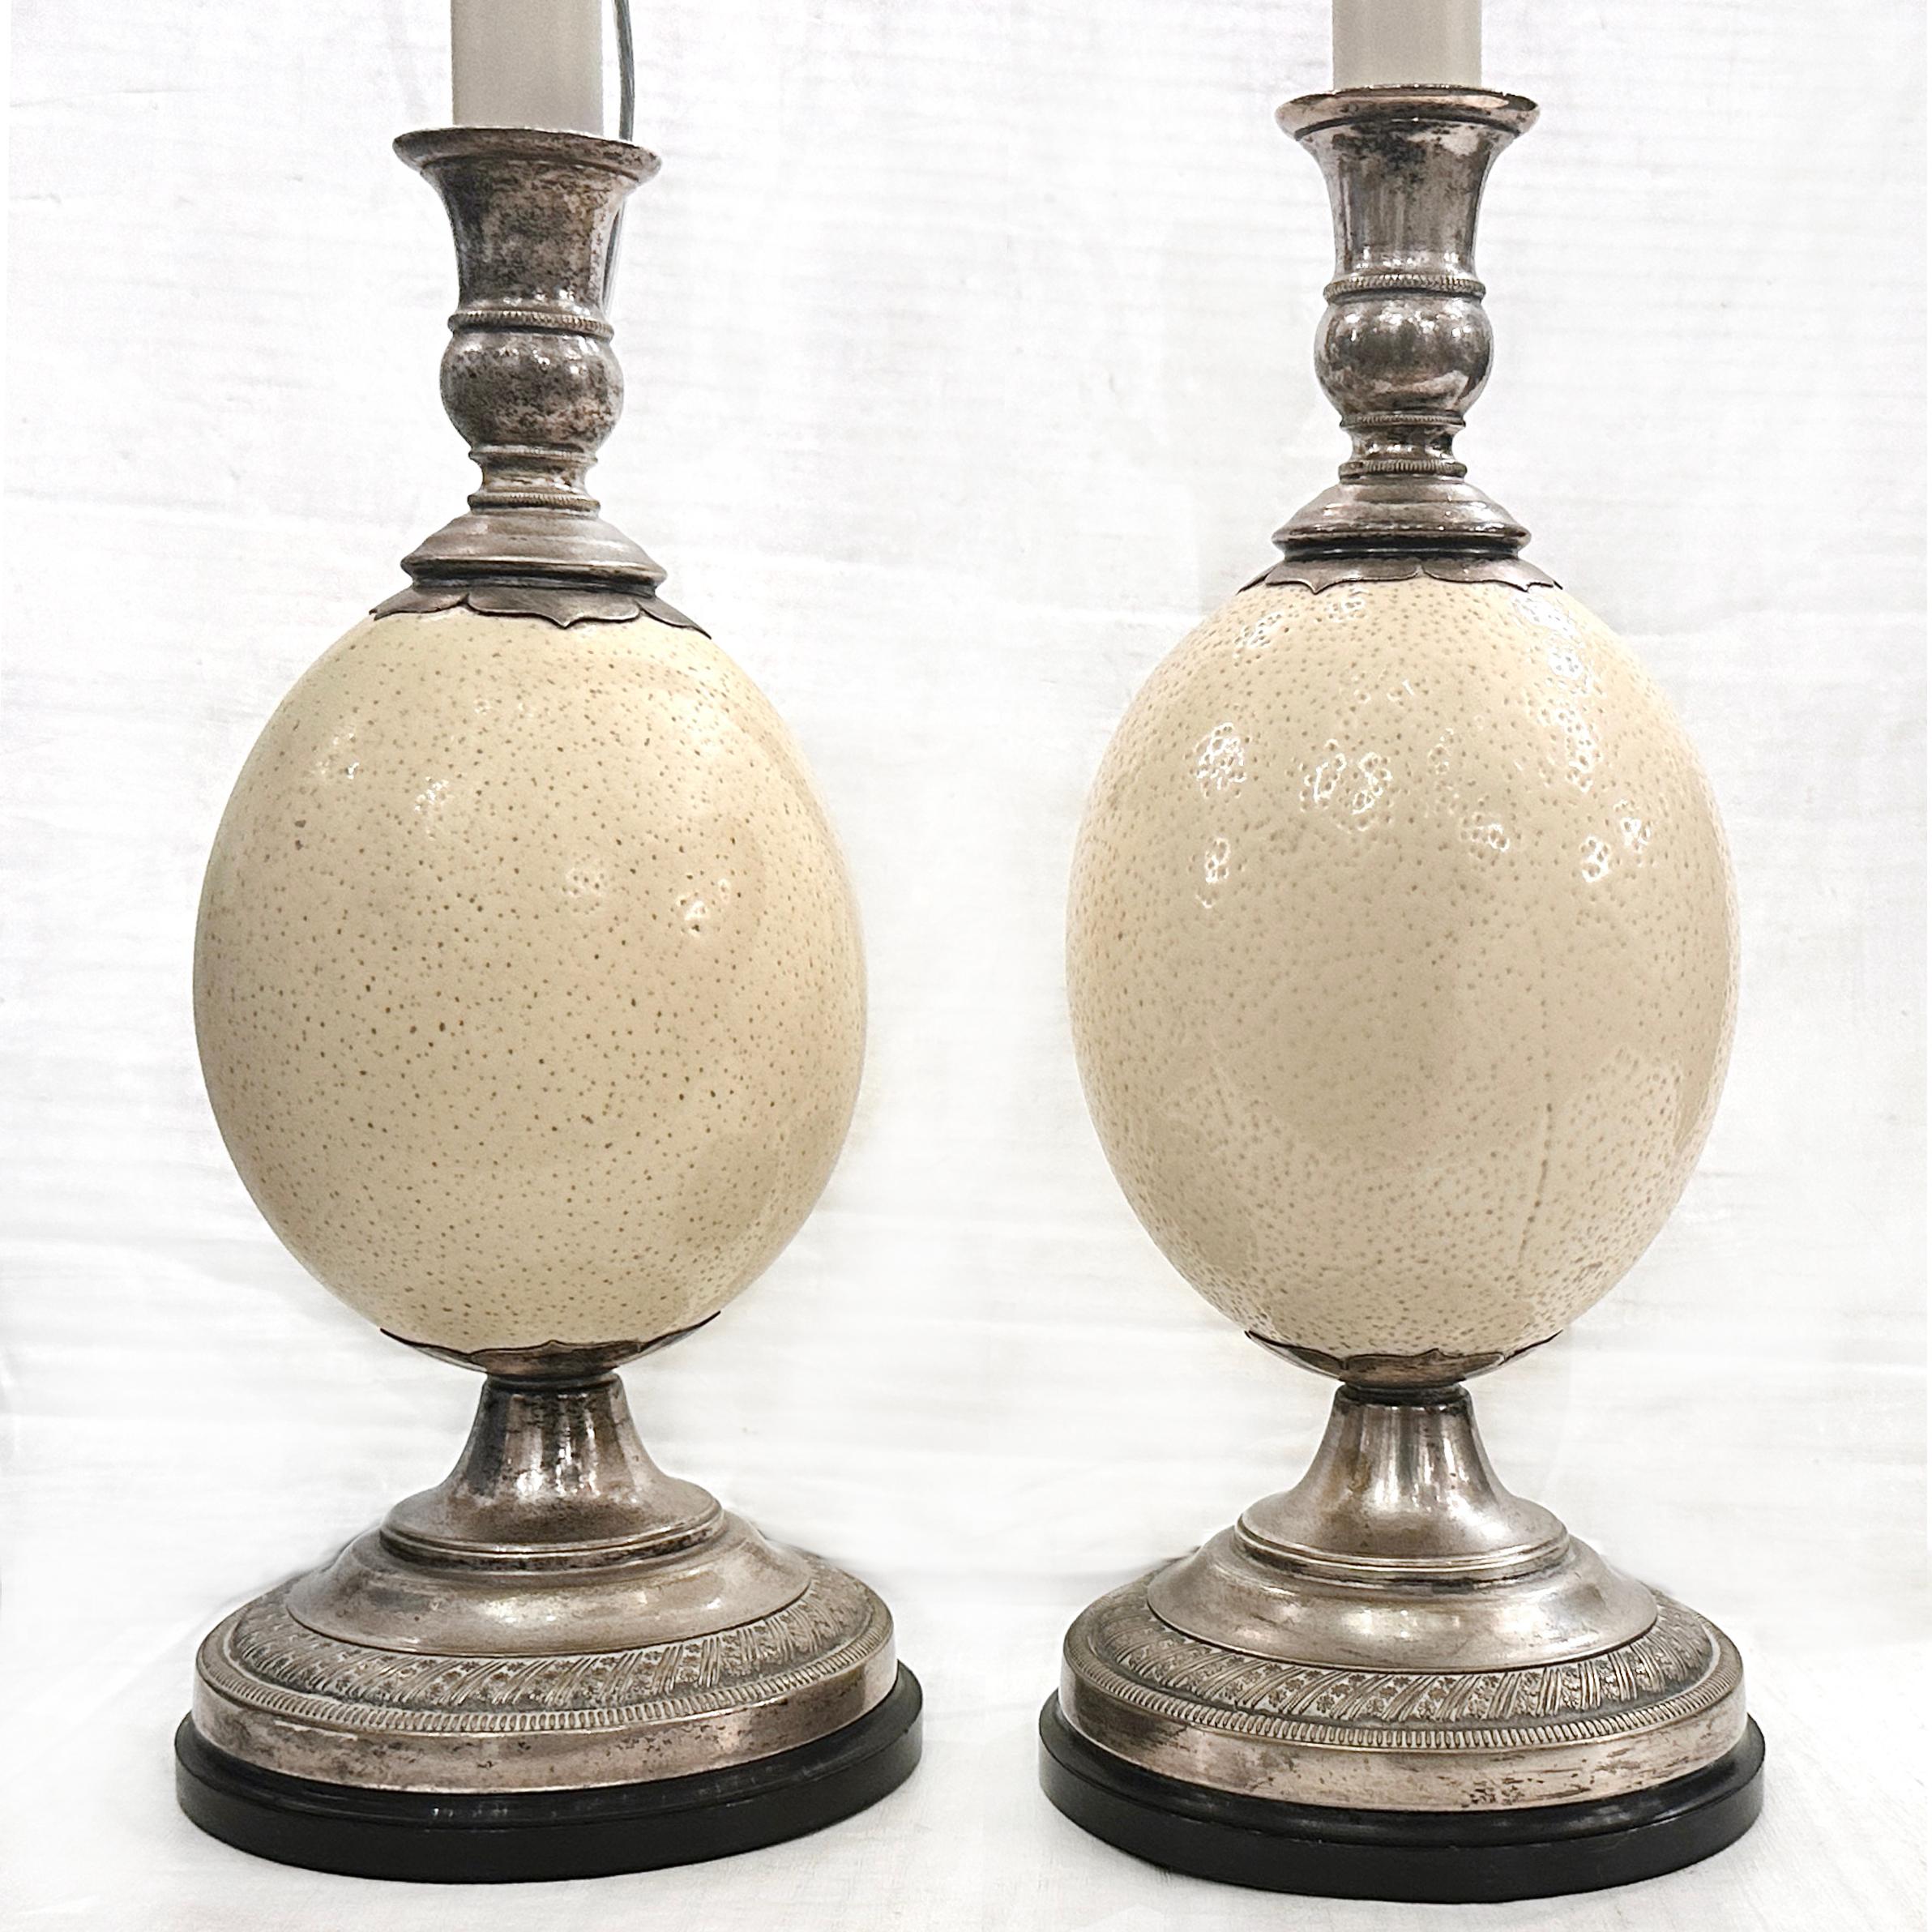 Paire de lampes anglaises en métal argenté des années 1950 avec un corps en forme d'œuf d'autruche.

Mesures :
Hauteur du corps : 12
Hauteur jusqu'à l'appui de l'abat-jour : 24